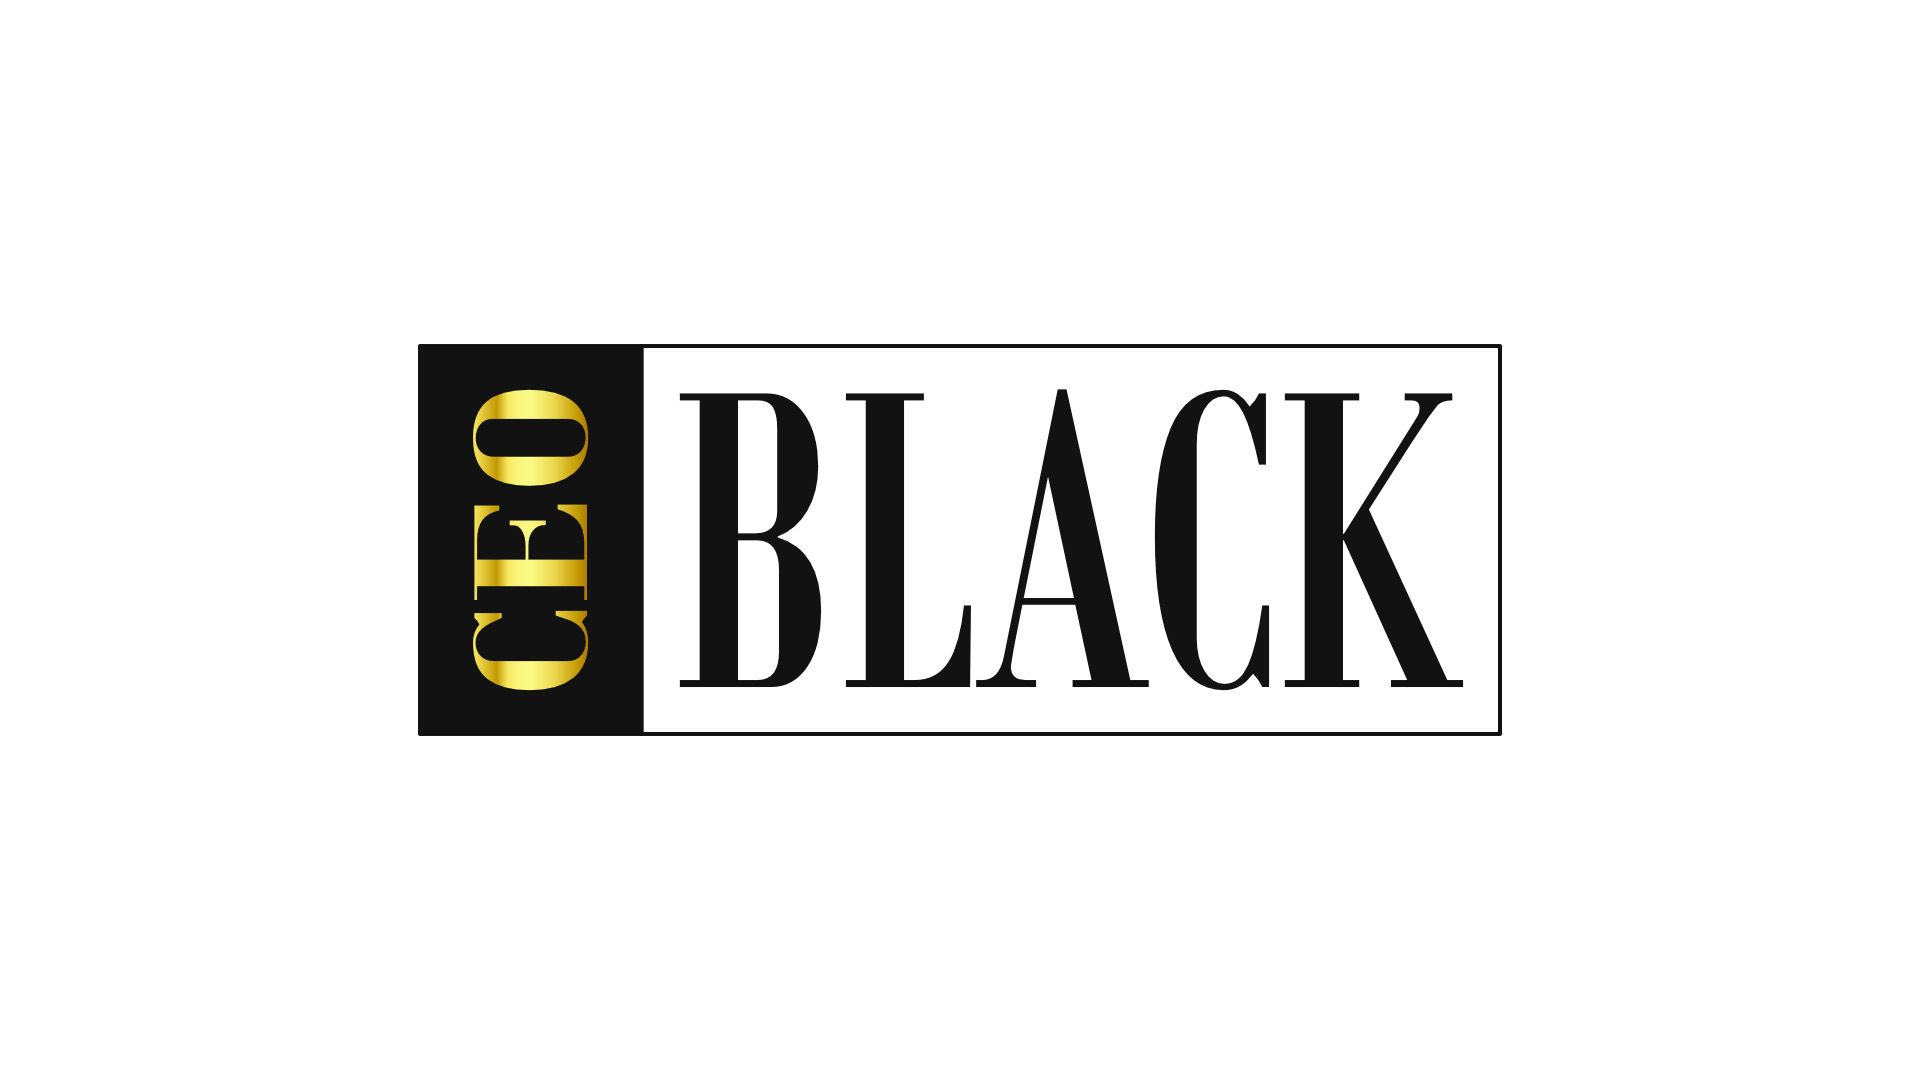 CEO Black LLC